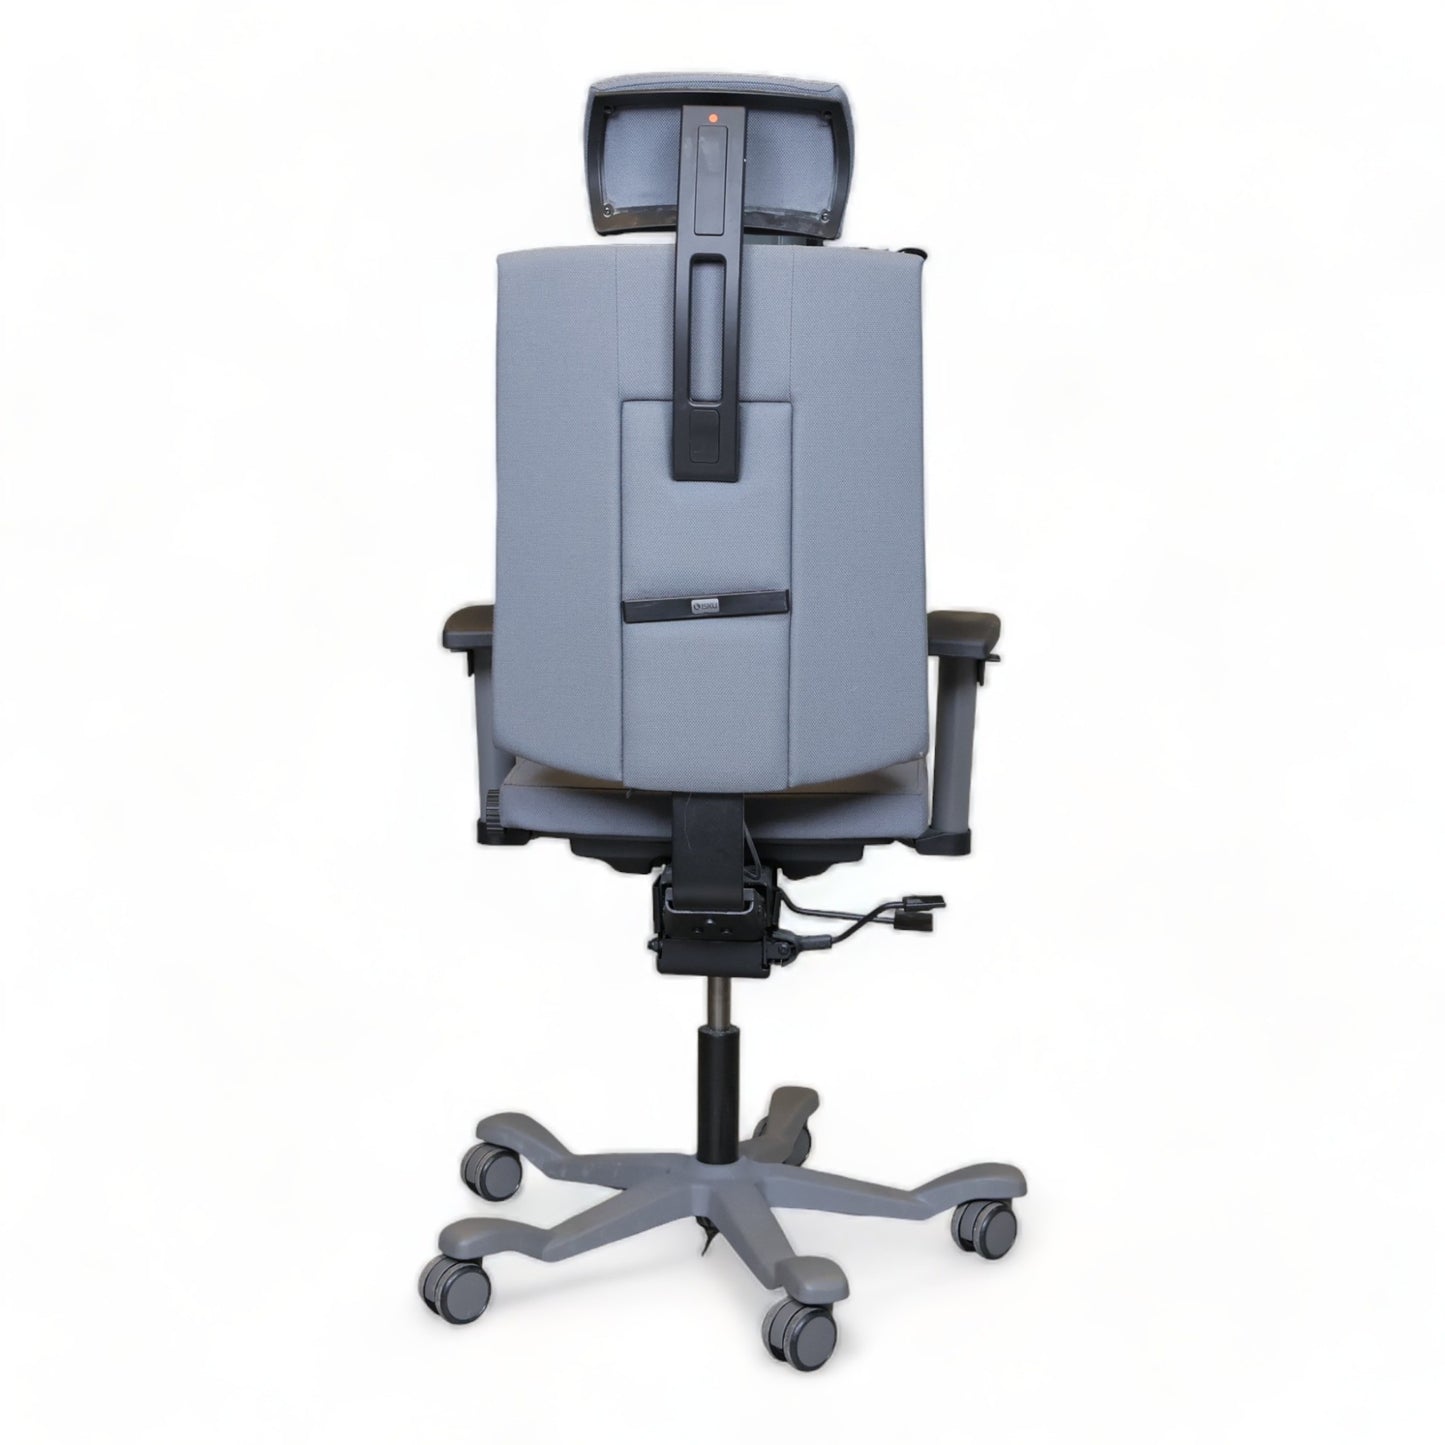 Nyrenset | ISKU kontorstol med nakkestøtte og justerbare armlener